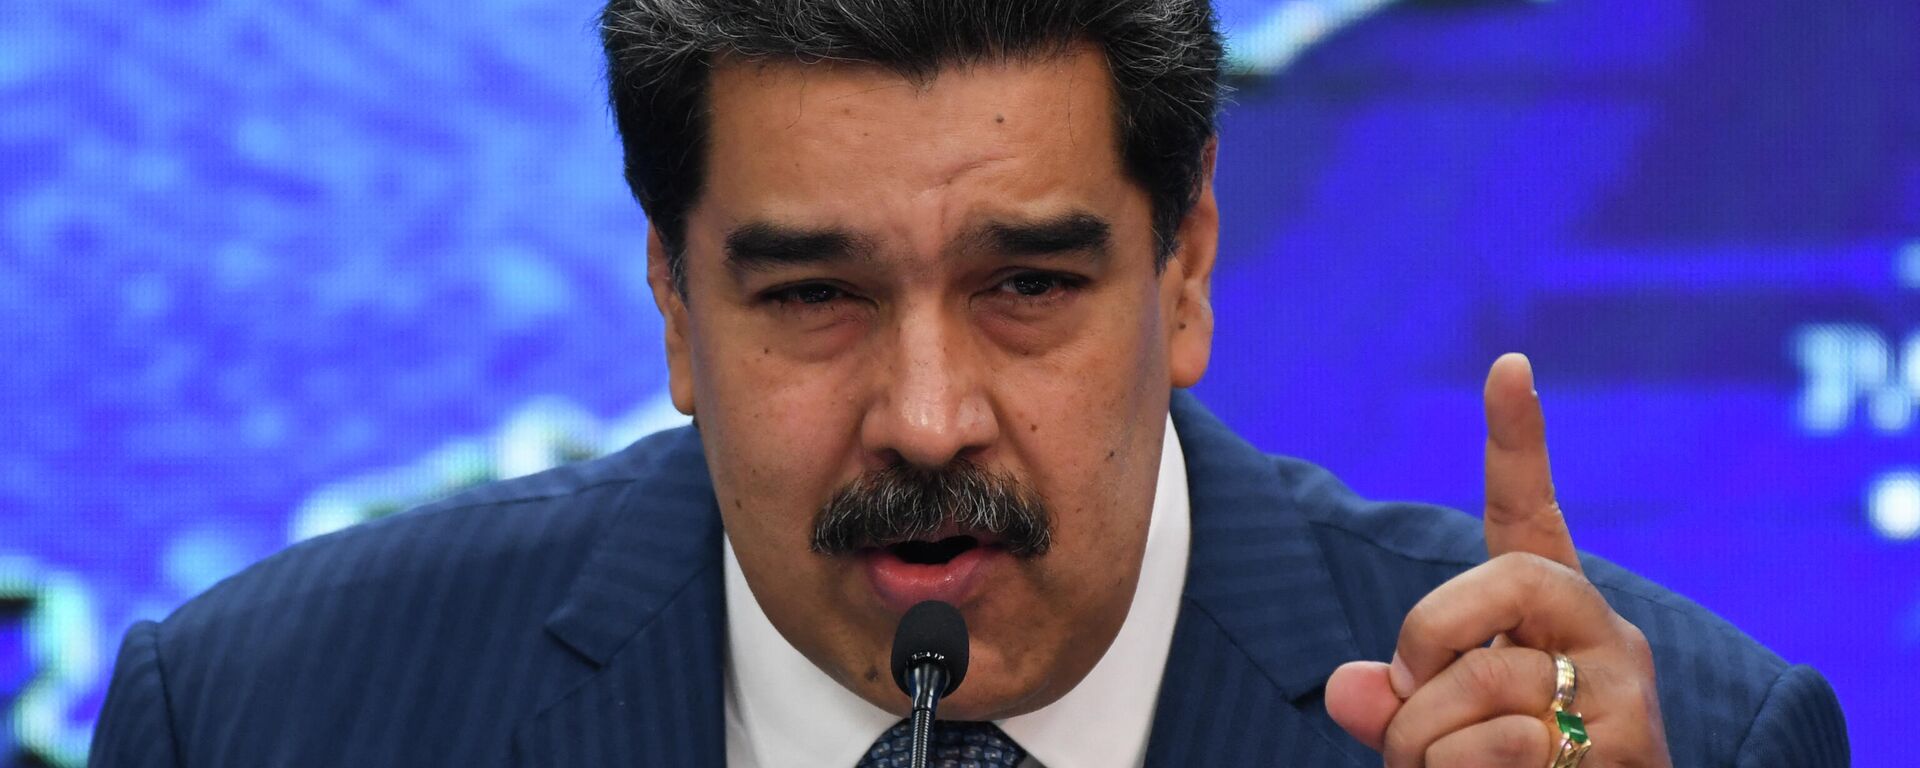 Nicolás Maduro, presidente de Venezuela - Sputnik Mundo, 1920, 09.09.2021